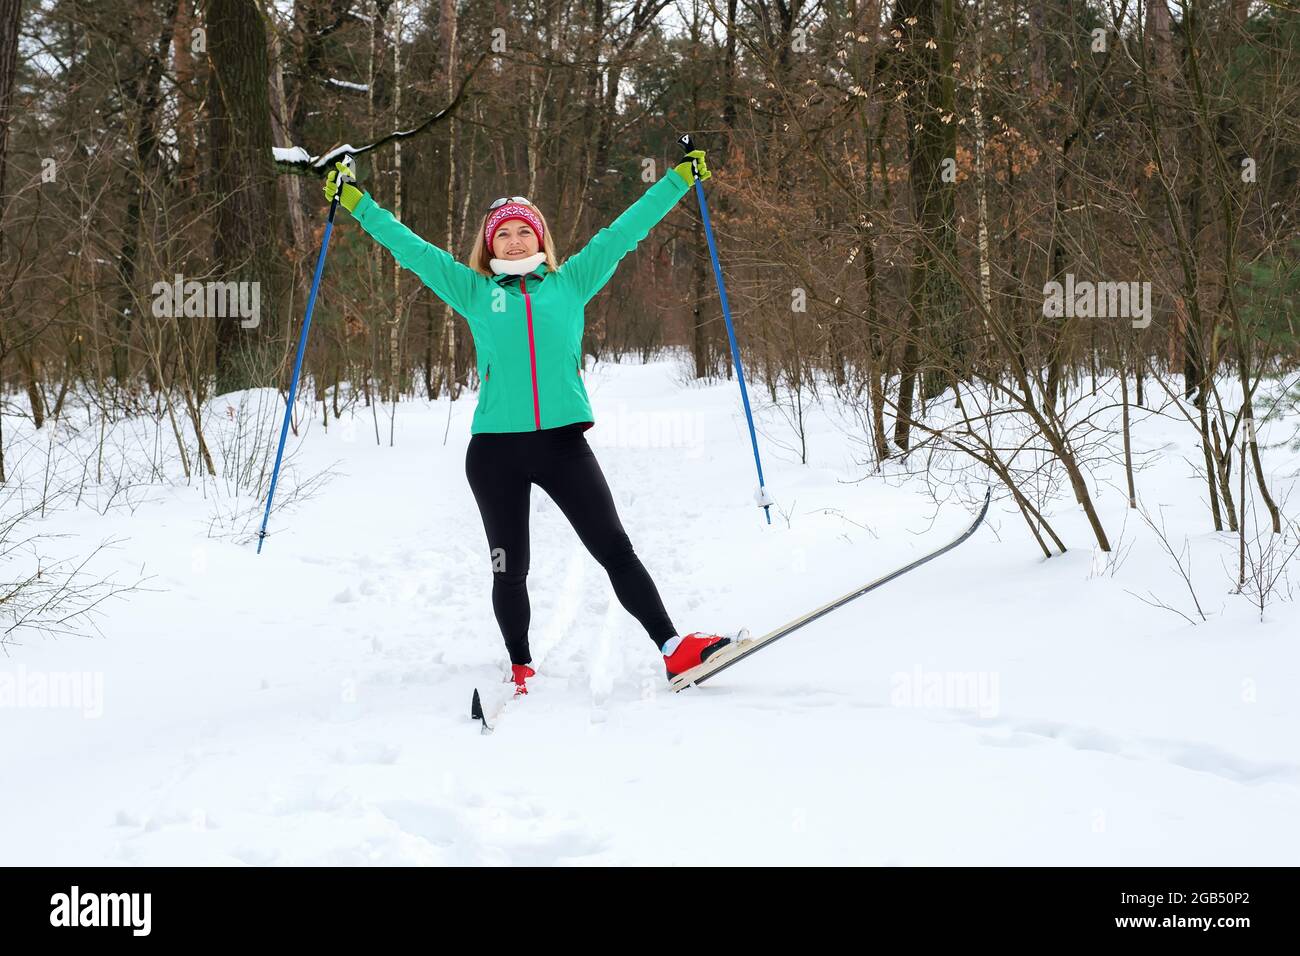 La mujer se va esquí de fondo en el invierno en el bosque Foto de stock